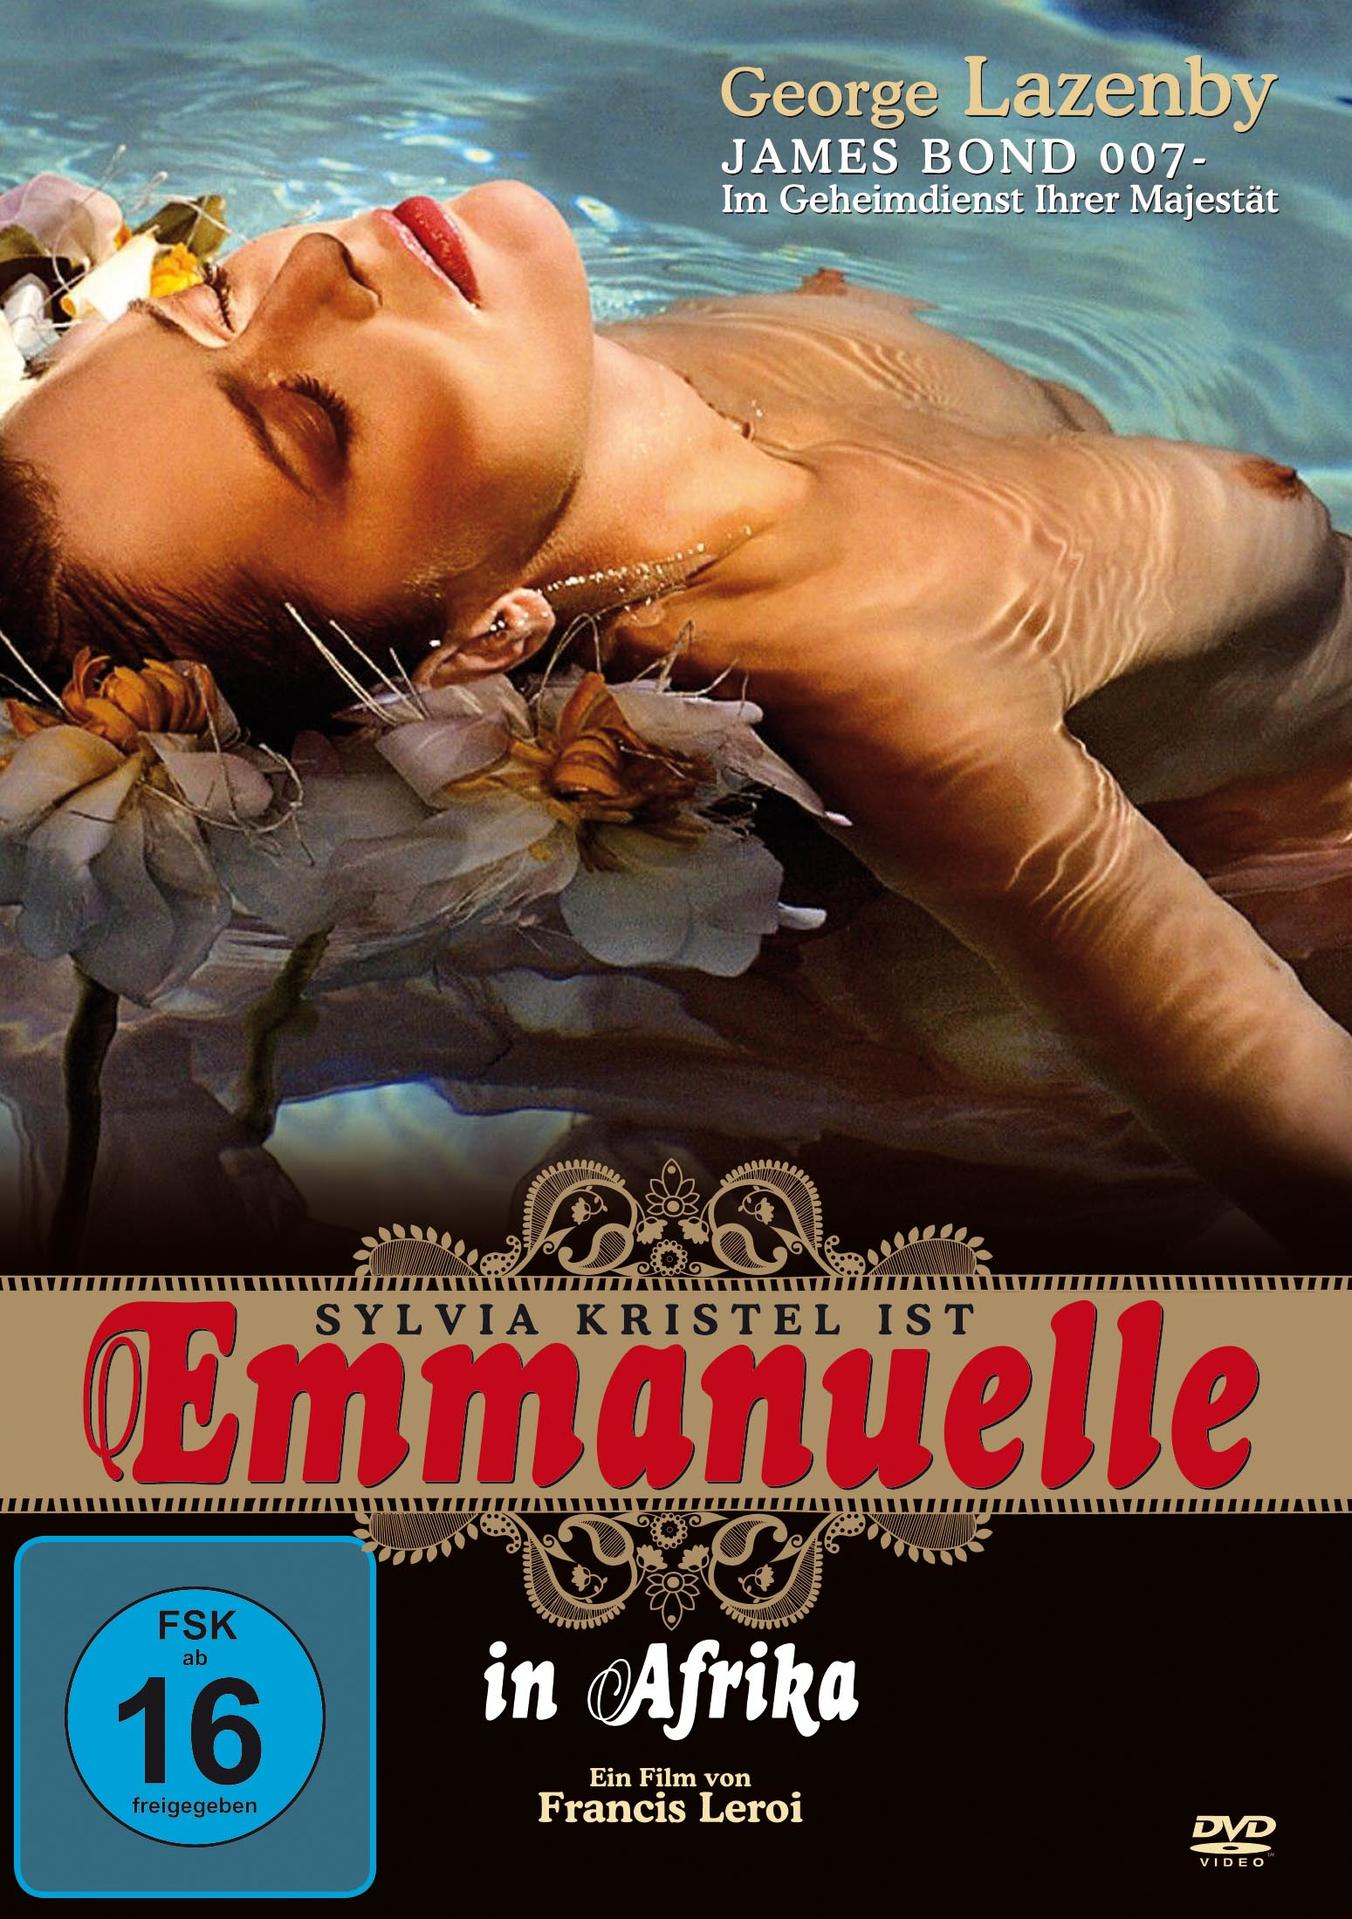 DVD in Emanuelle Afrika